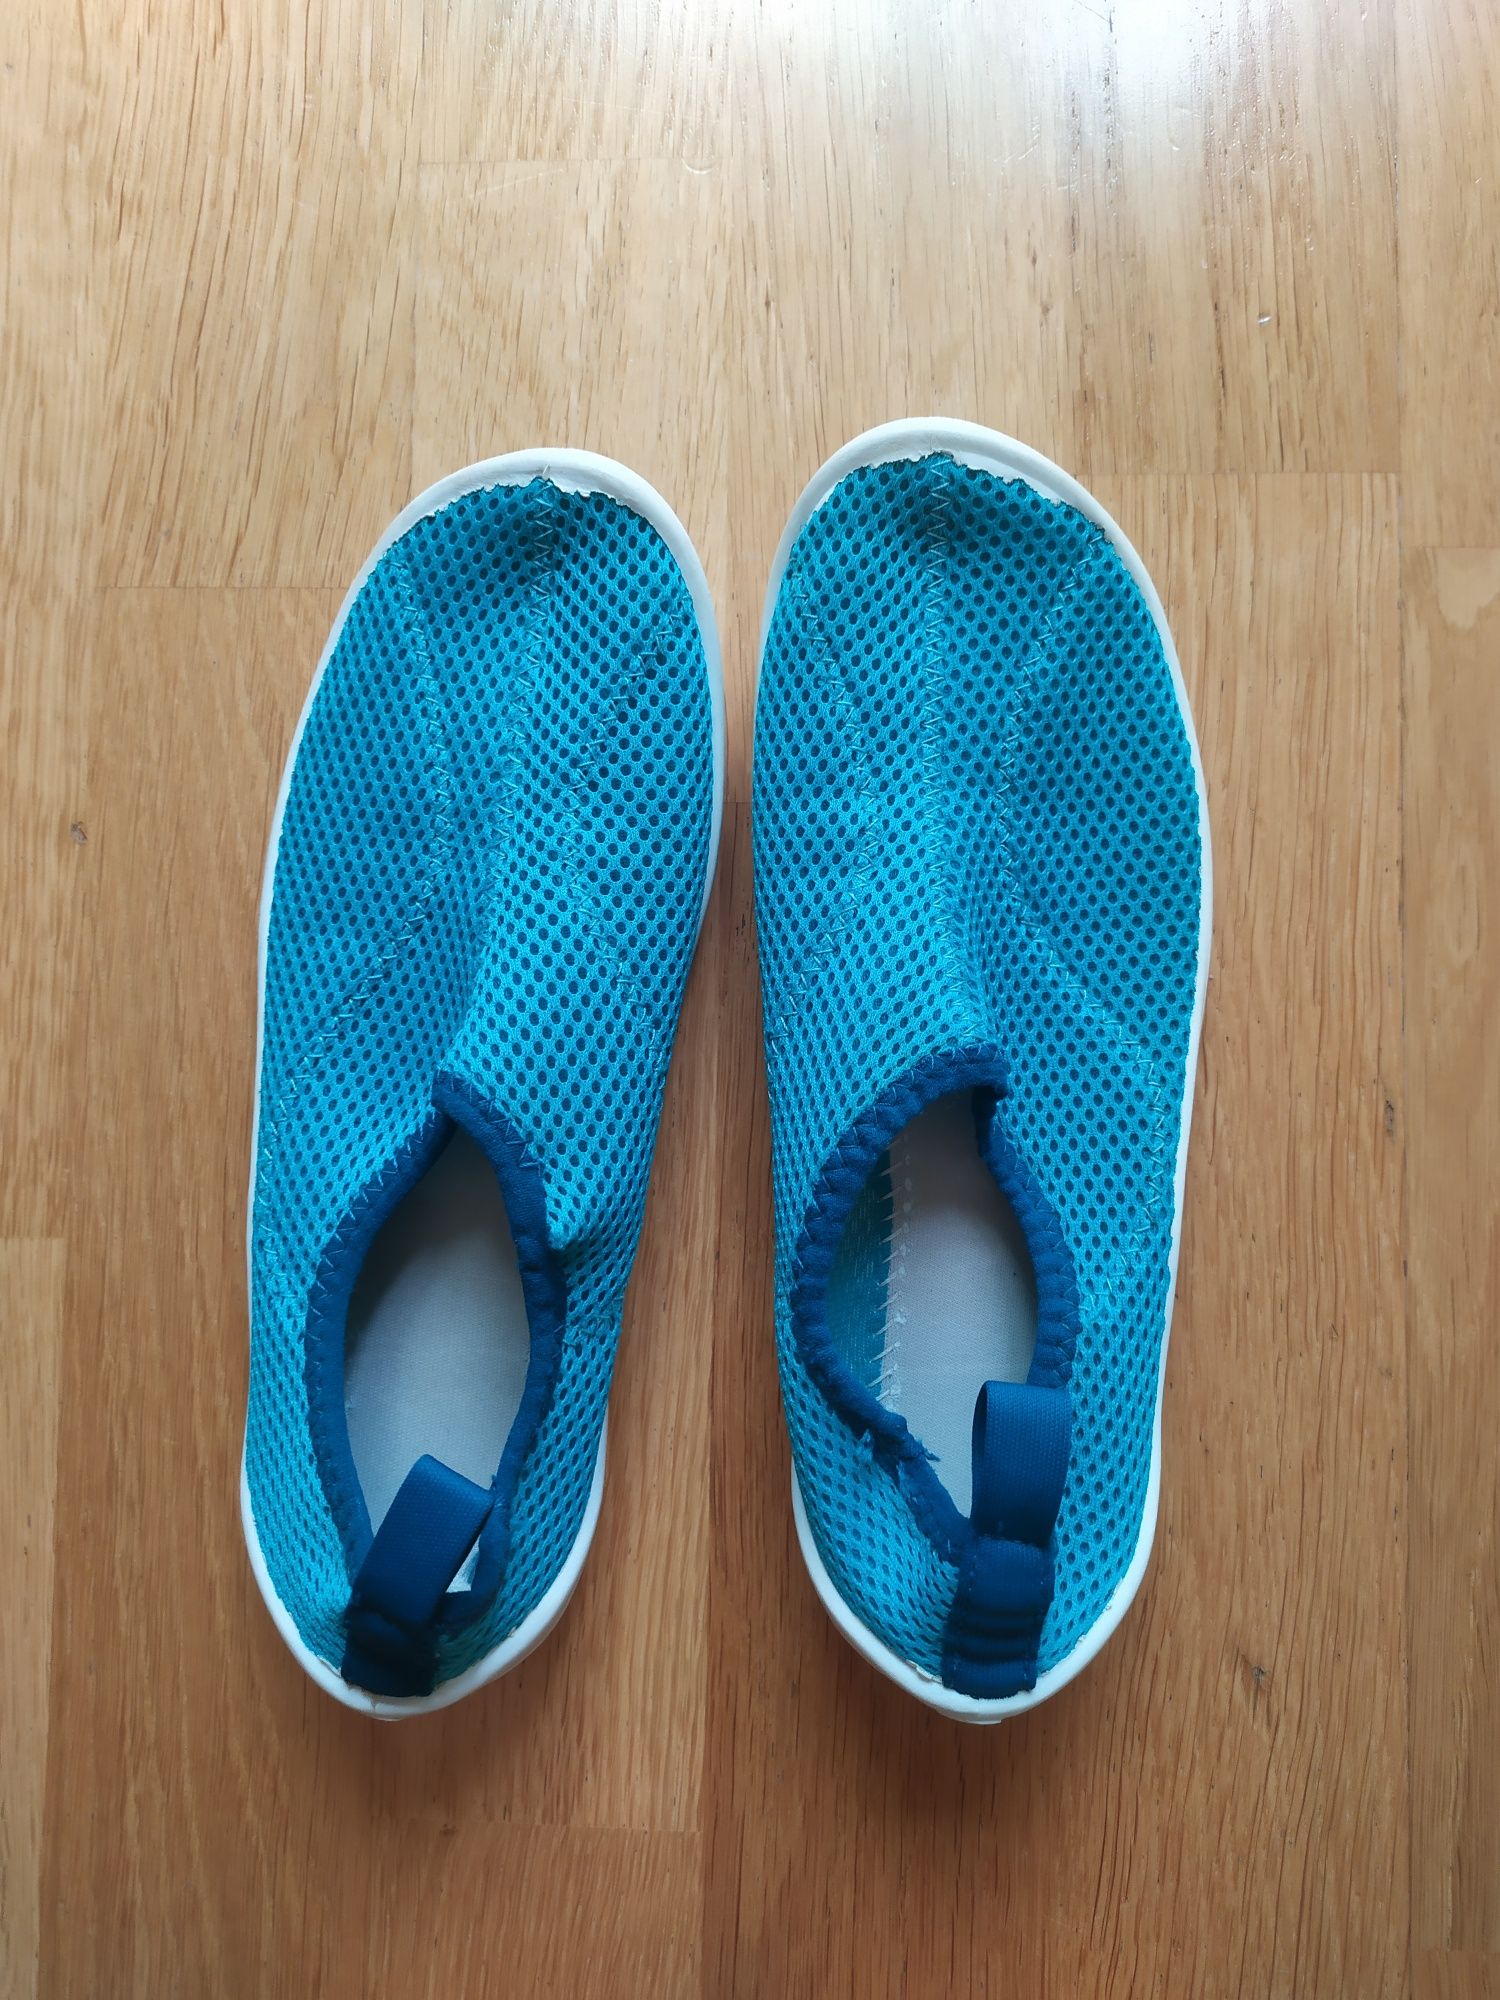 Decathlon buty do wody rozmiar 34-35